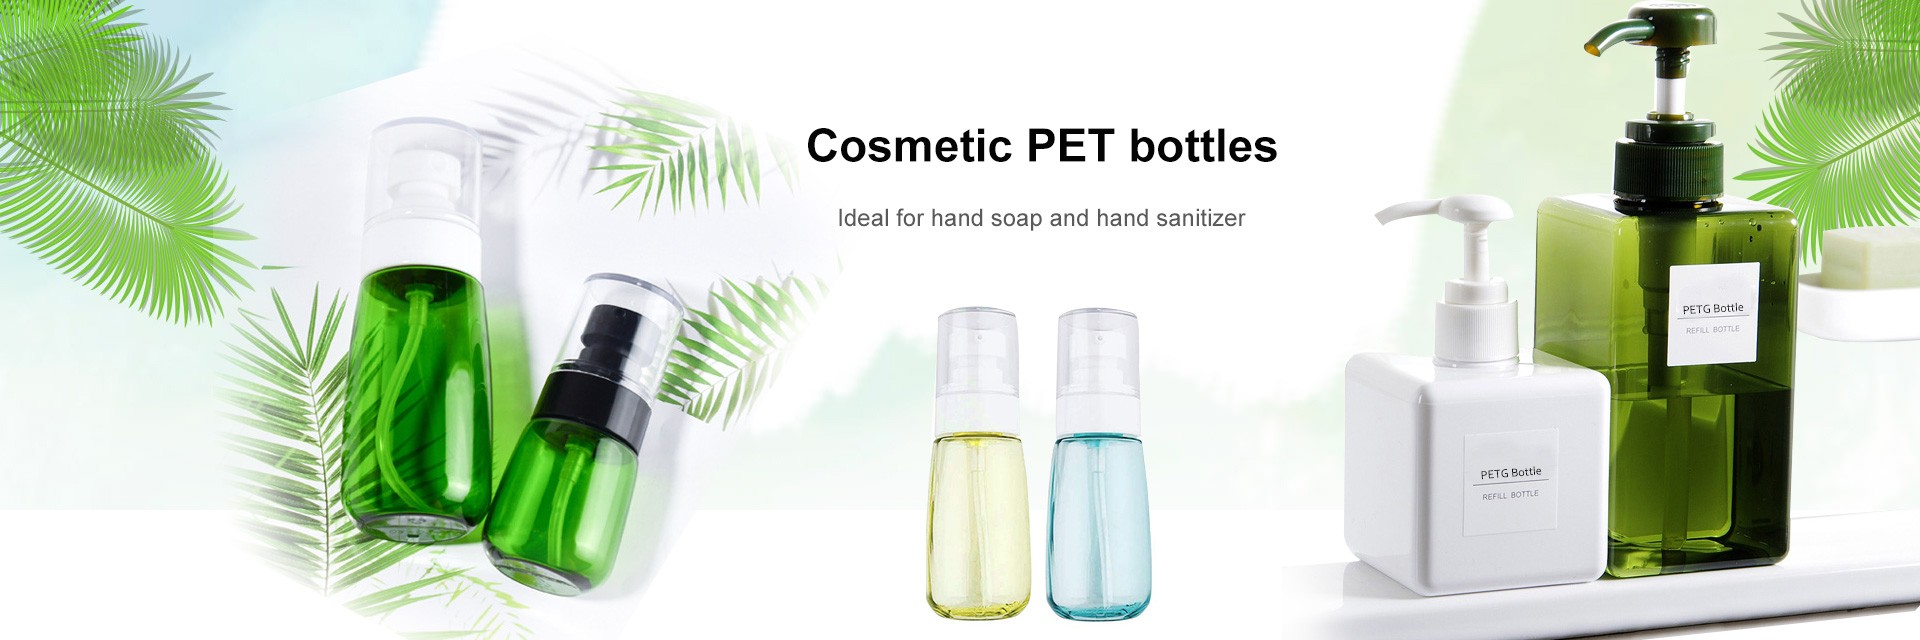 Cosmetische PET-flessen